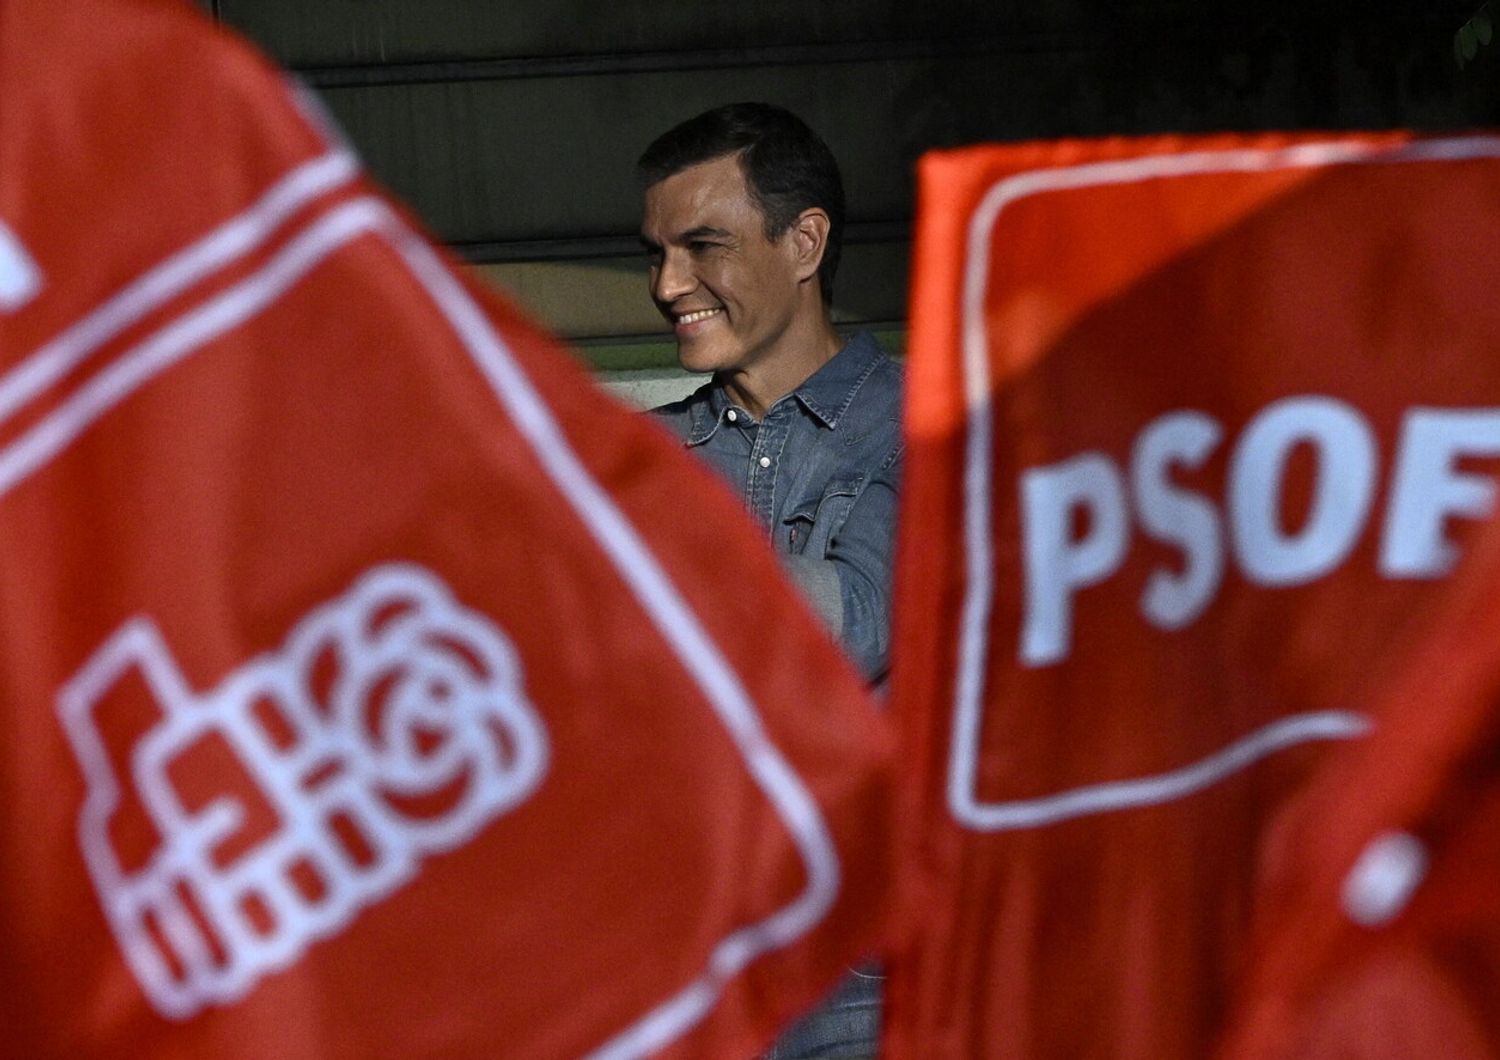 Pedro Sanchez